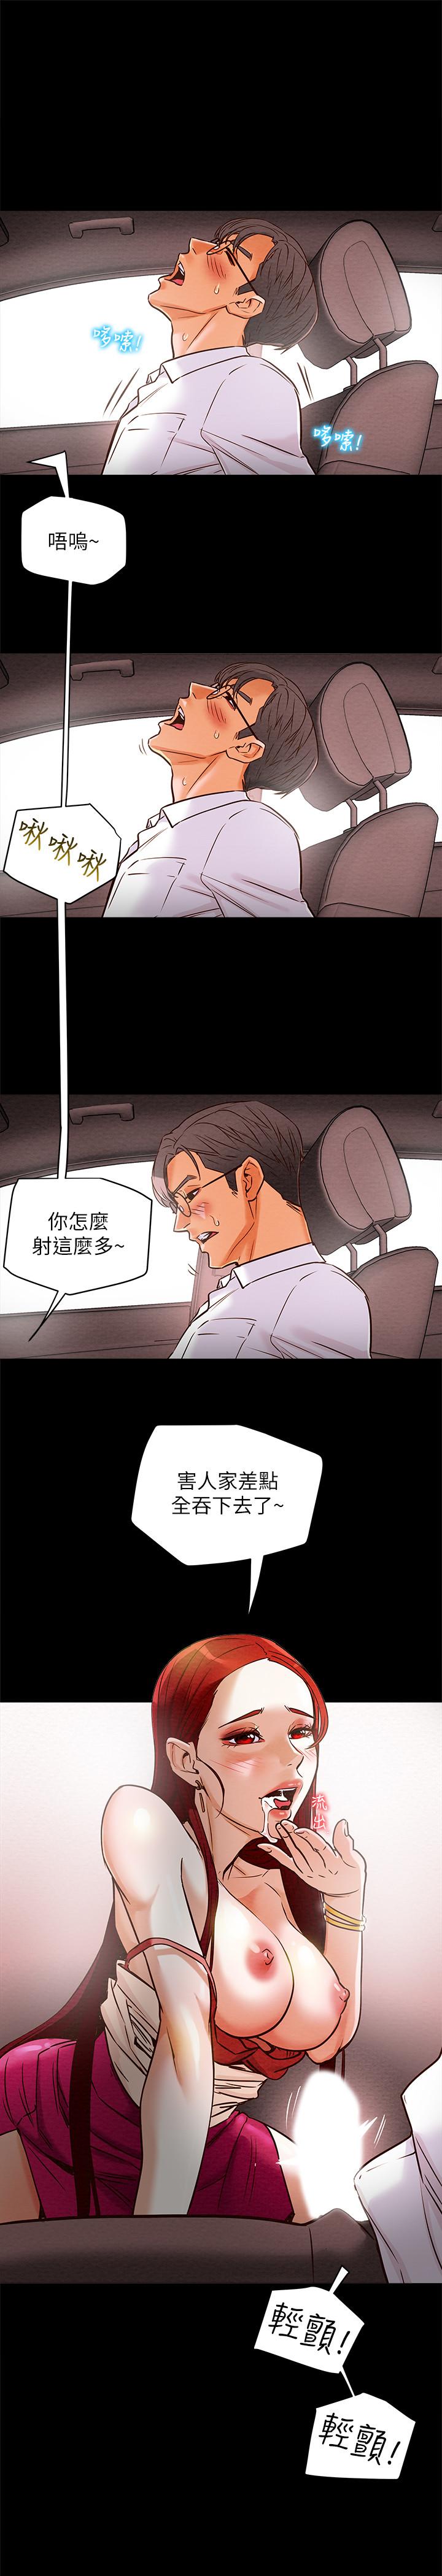 韩国污漫画 純情女攻略計劃 第5话-临停路边的刺激车震 32